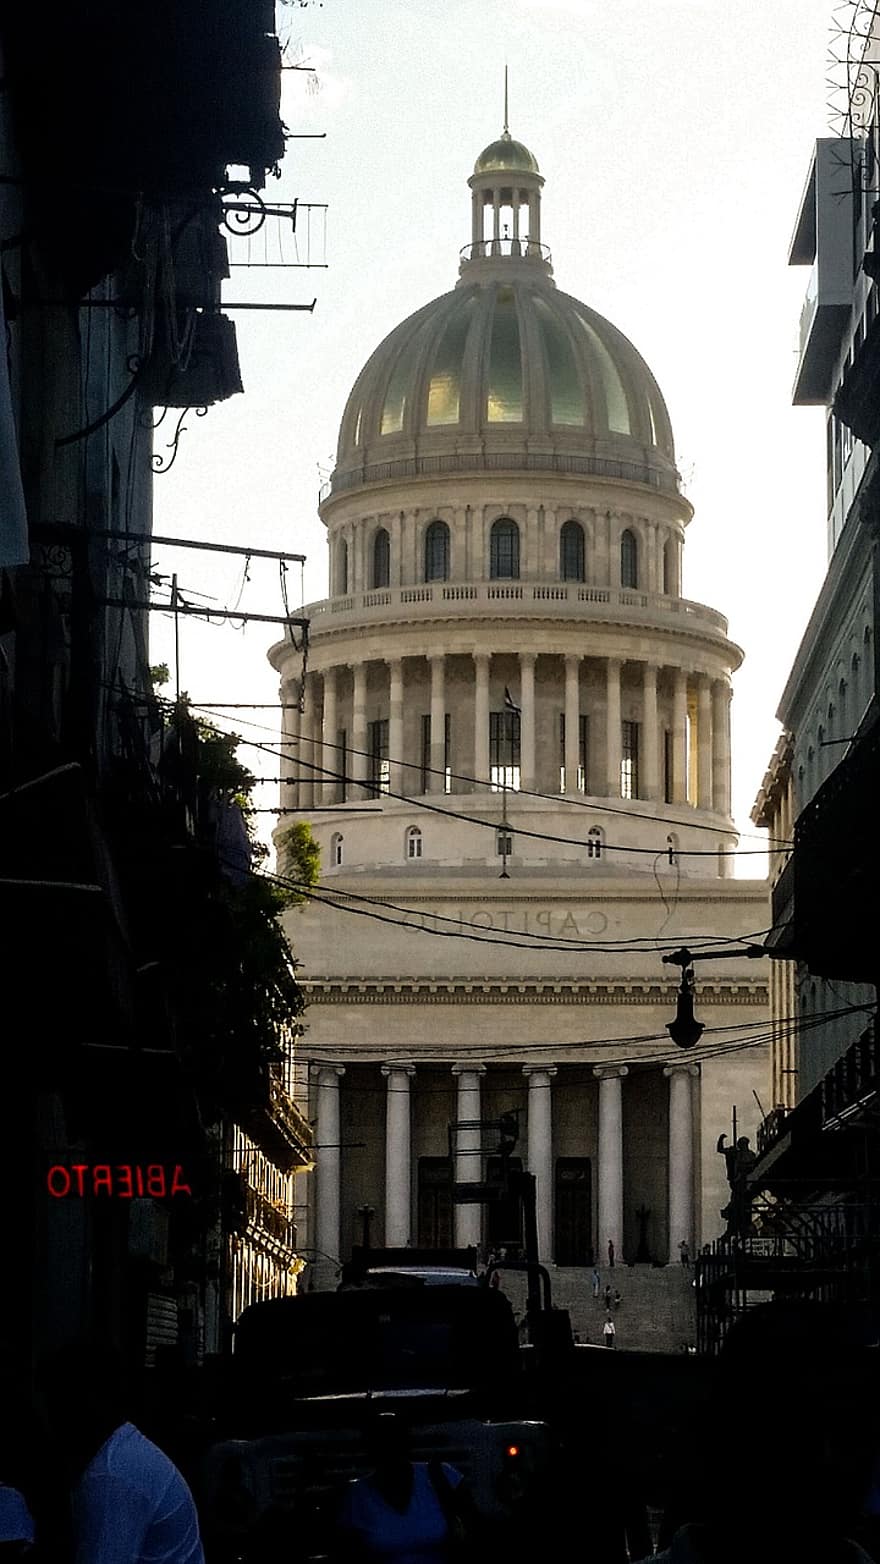 Αβάνα, καπιτώλιο, πόλη, Κούβα, el capitolio, Κτήριο του Εθνικού Καπιτωλίου, Κτίριο, αρχιτεκτονική, παλαιός, ιστορικός, δρόμος